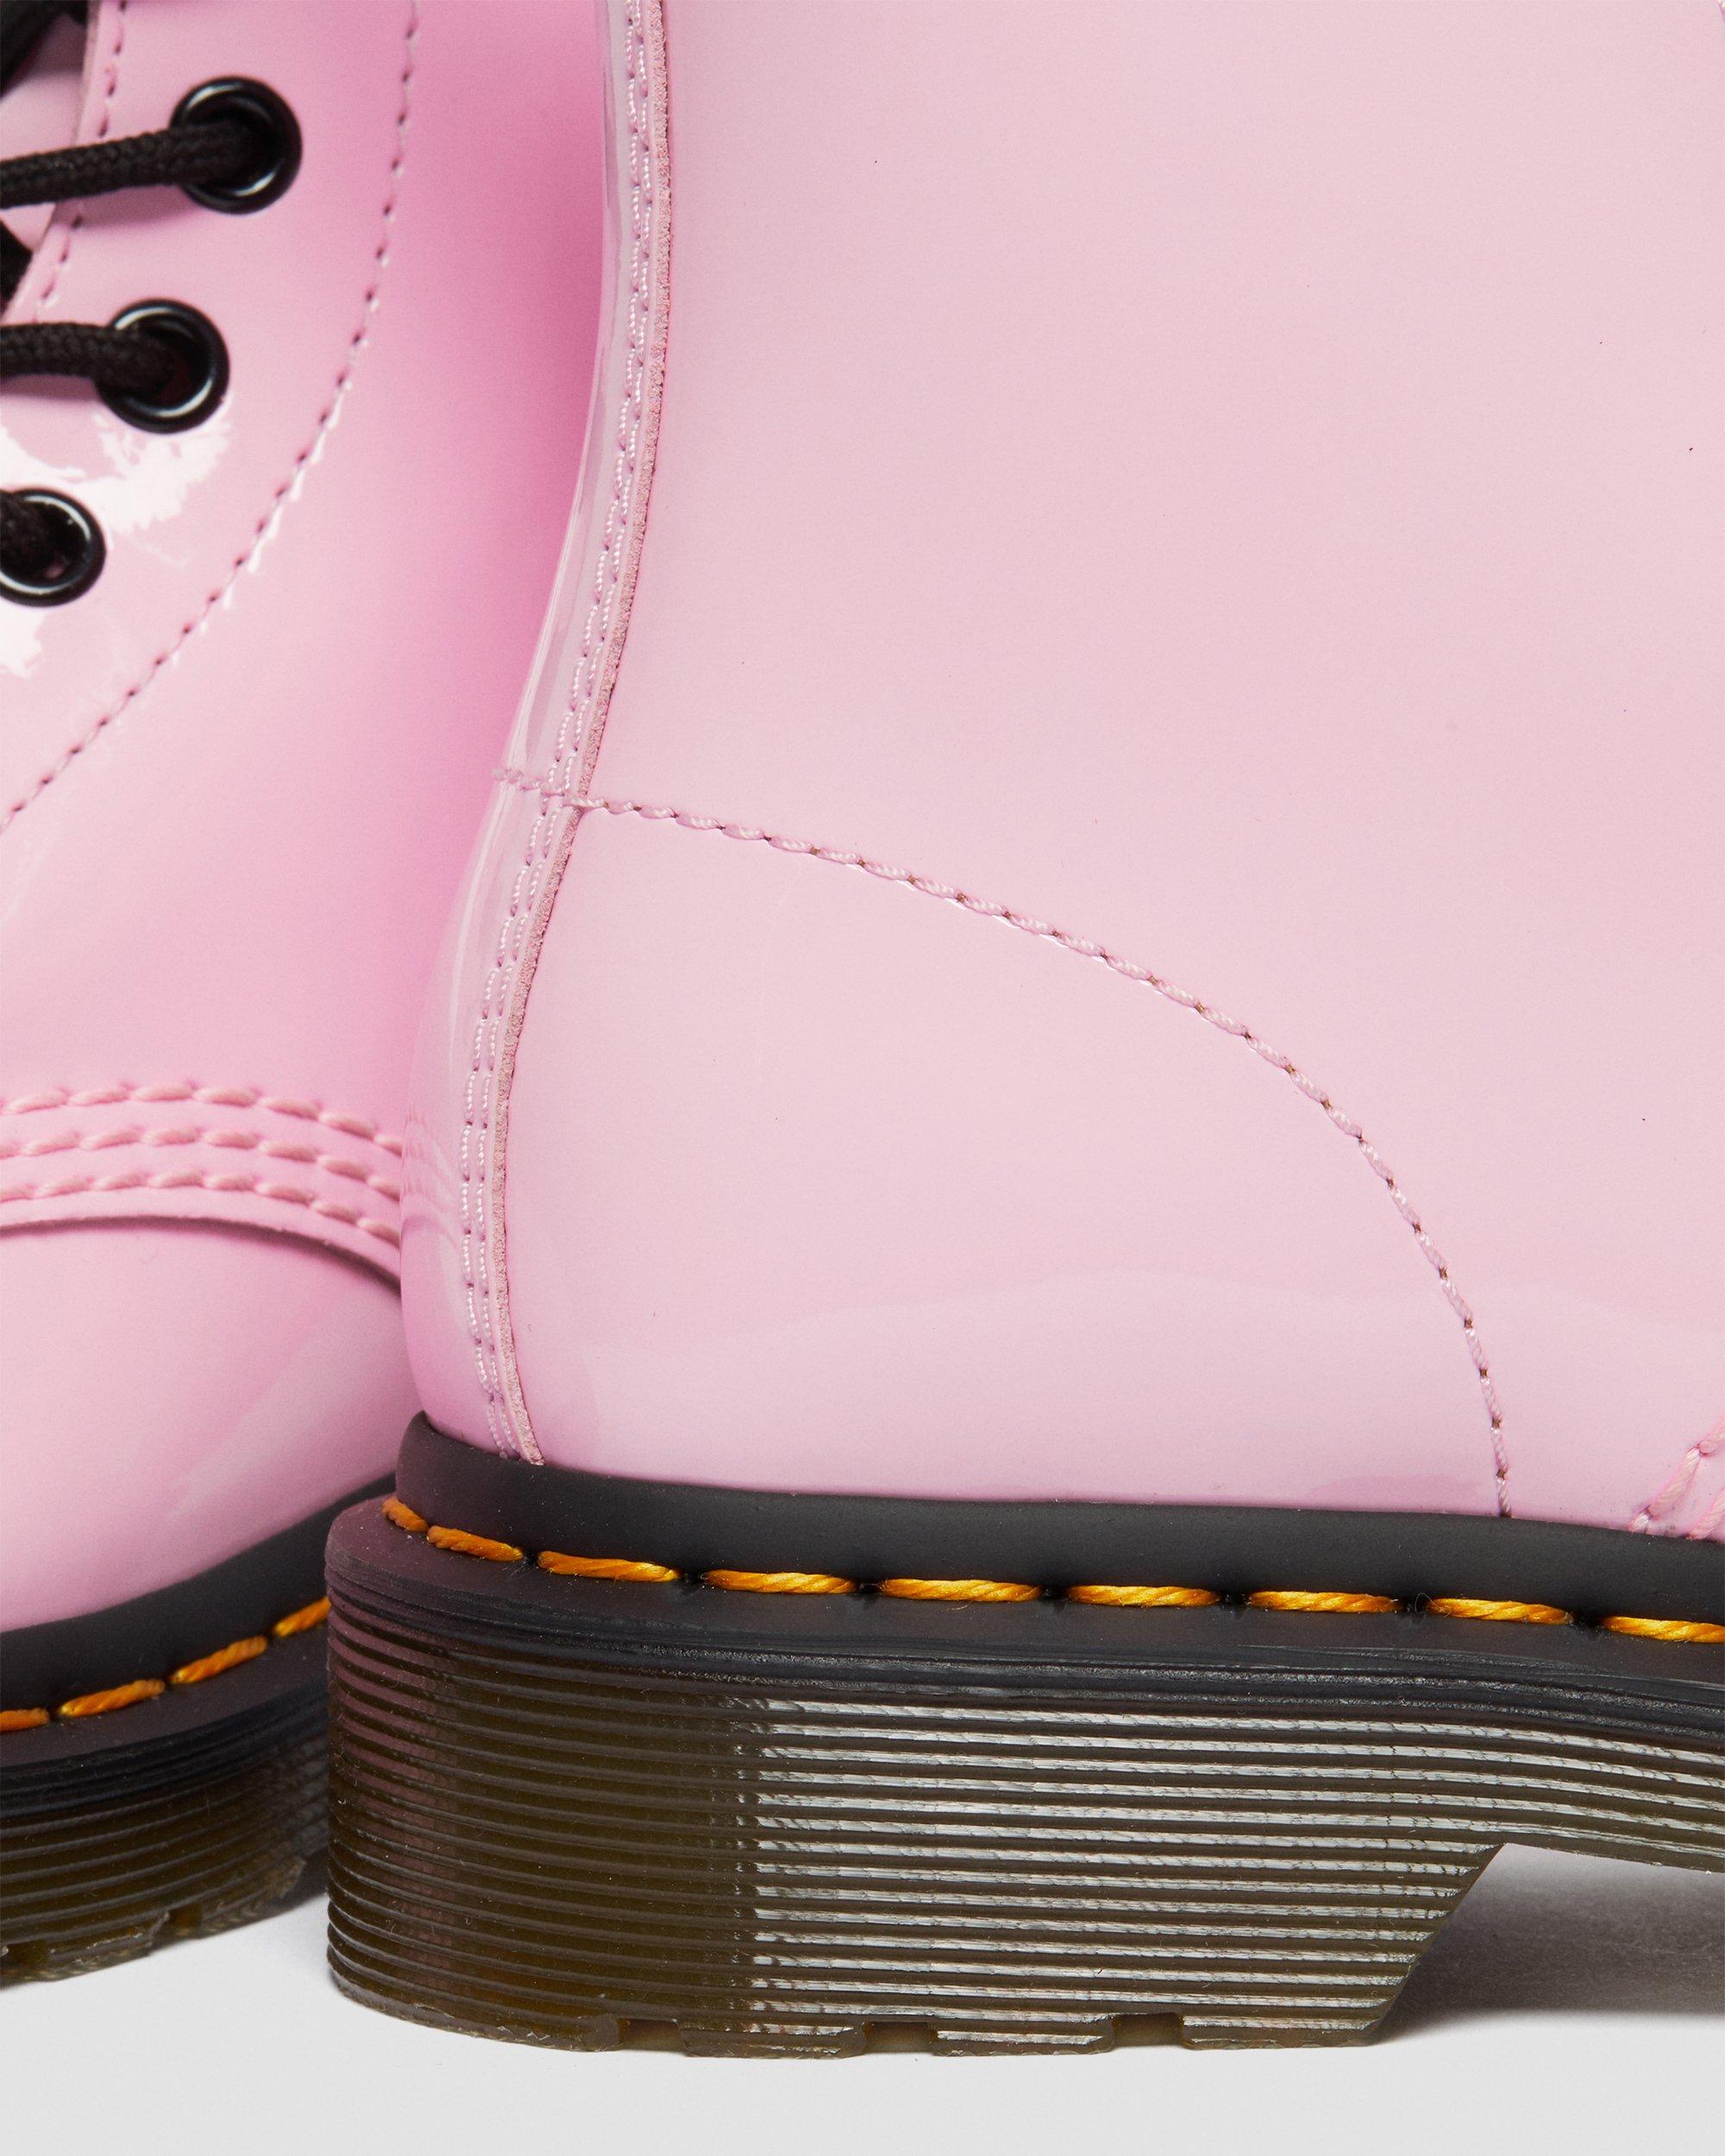 Vervreemden verjaardag discretie 1460 Women's Patent Leather Lace Up Boots | Dr. Martens